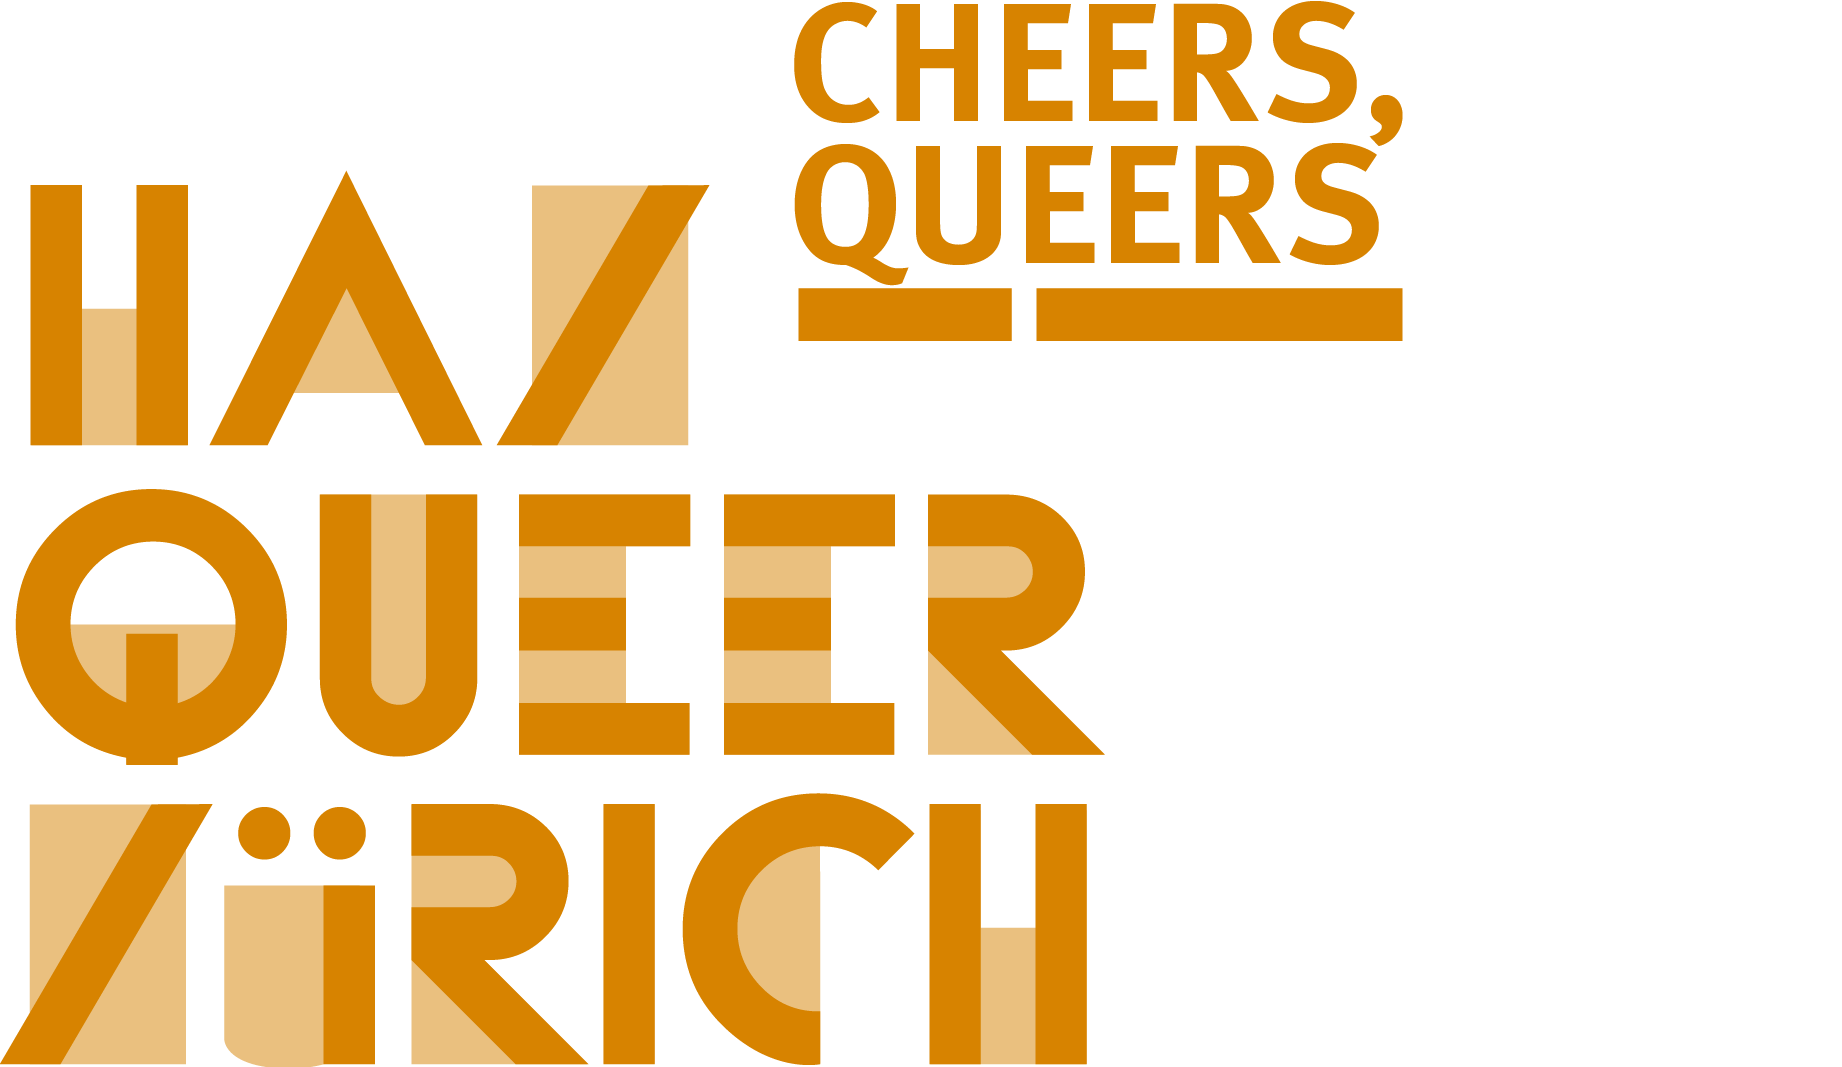 HAZ QUEER ZÜRICH - Cheers, Queers